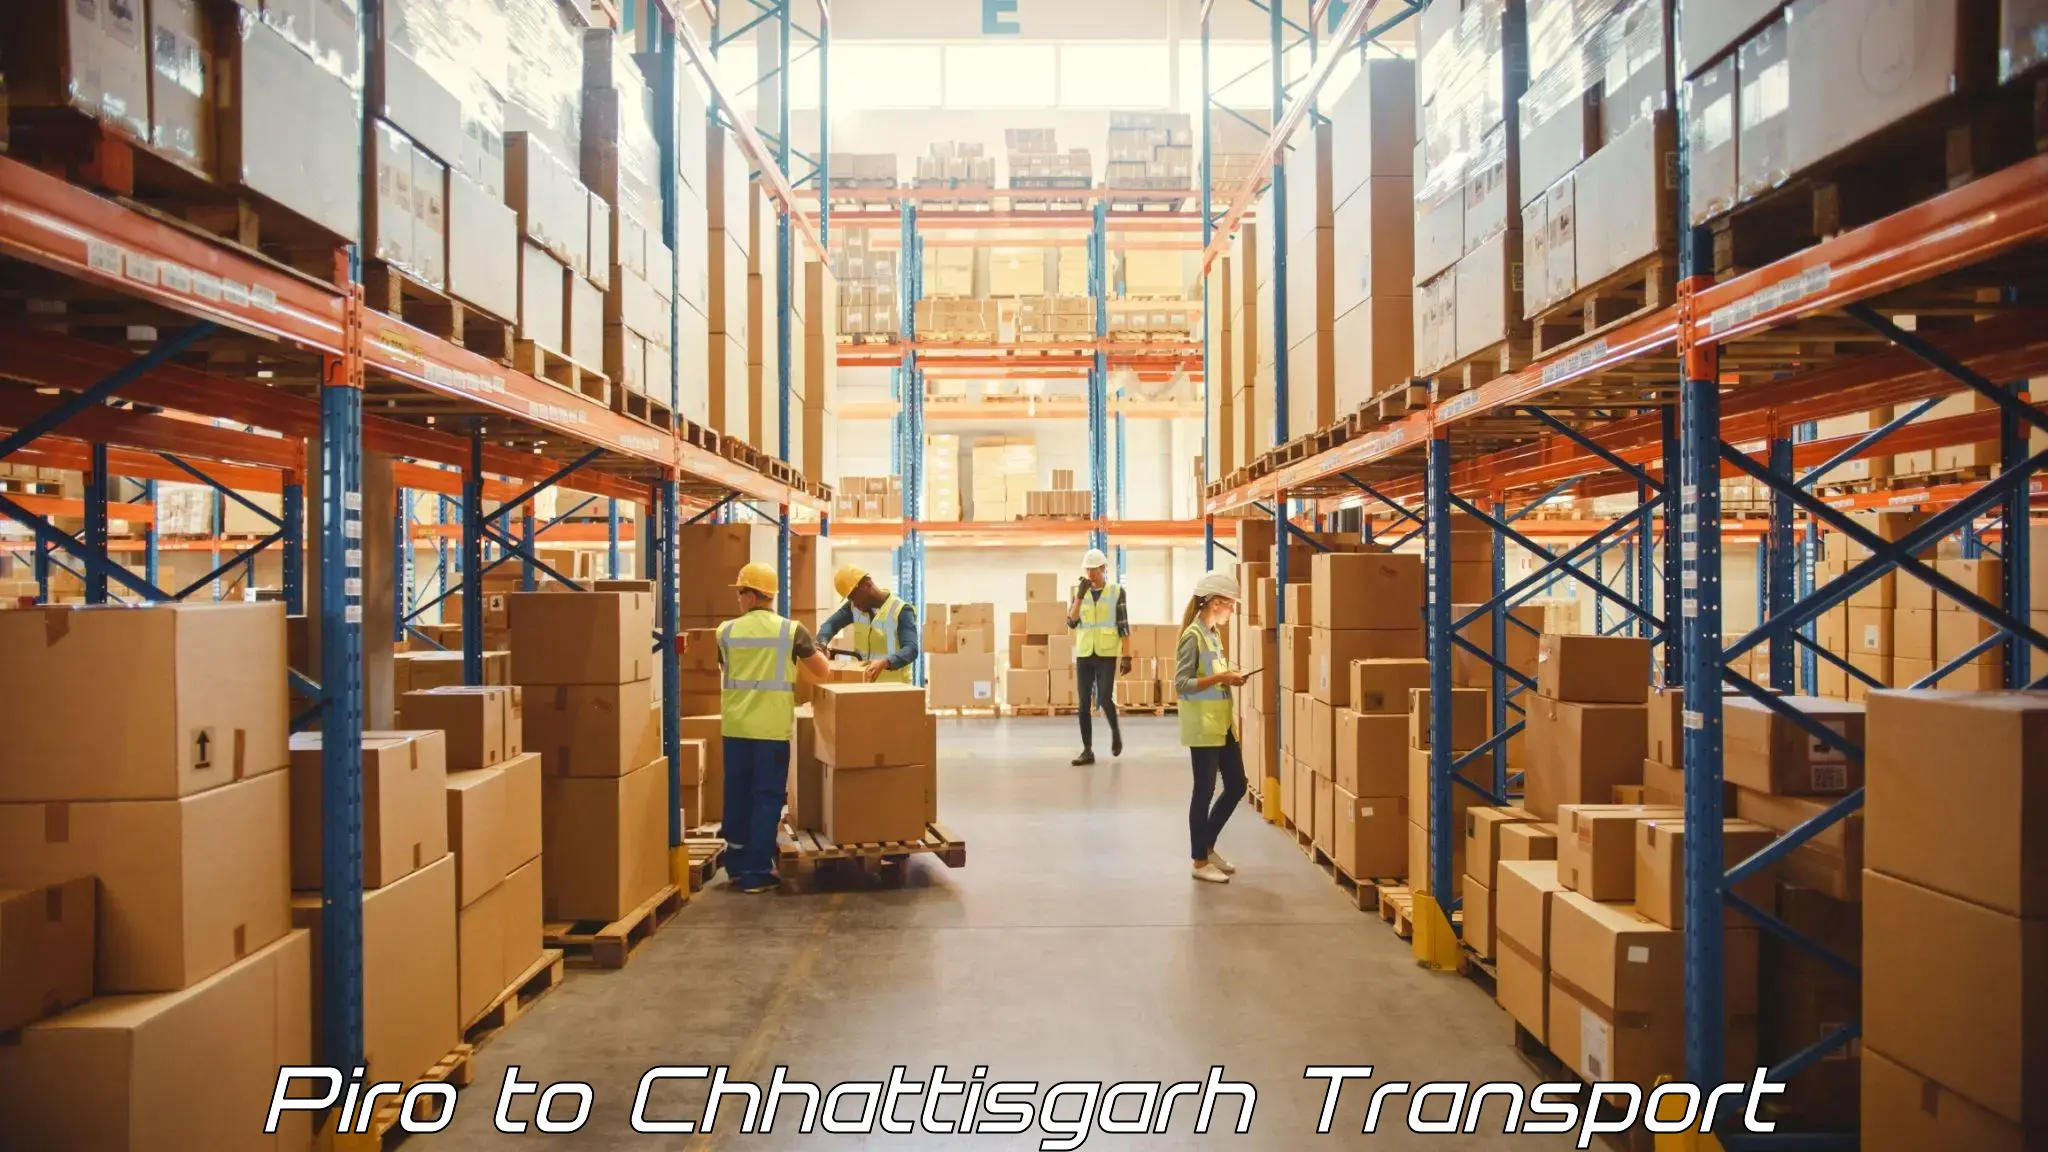 Cargo train transport services in Piro to Patna Chhattisgarh